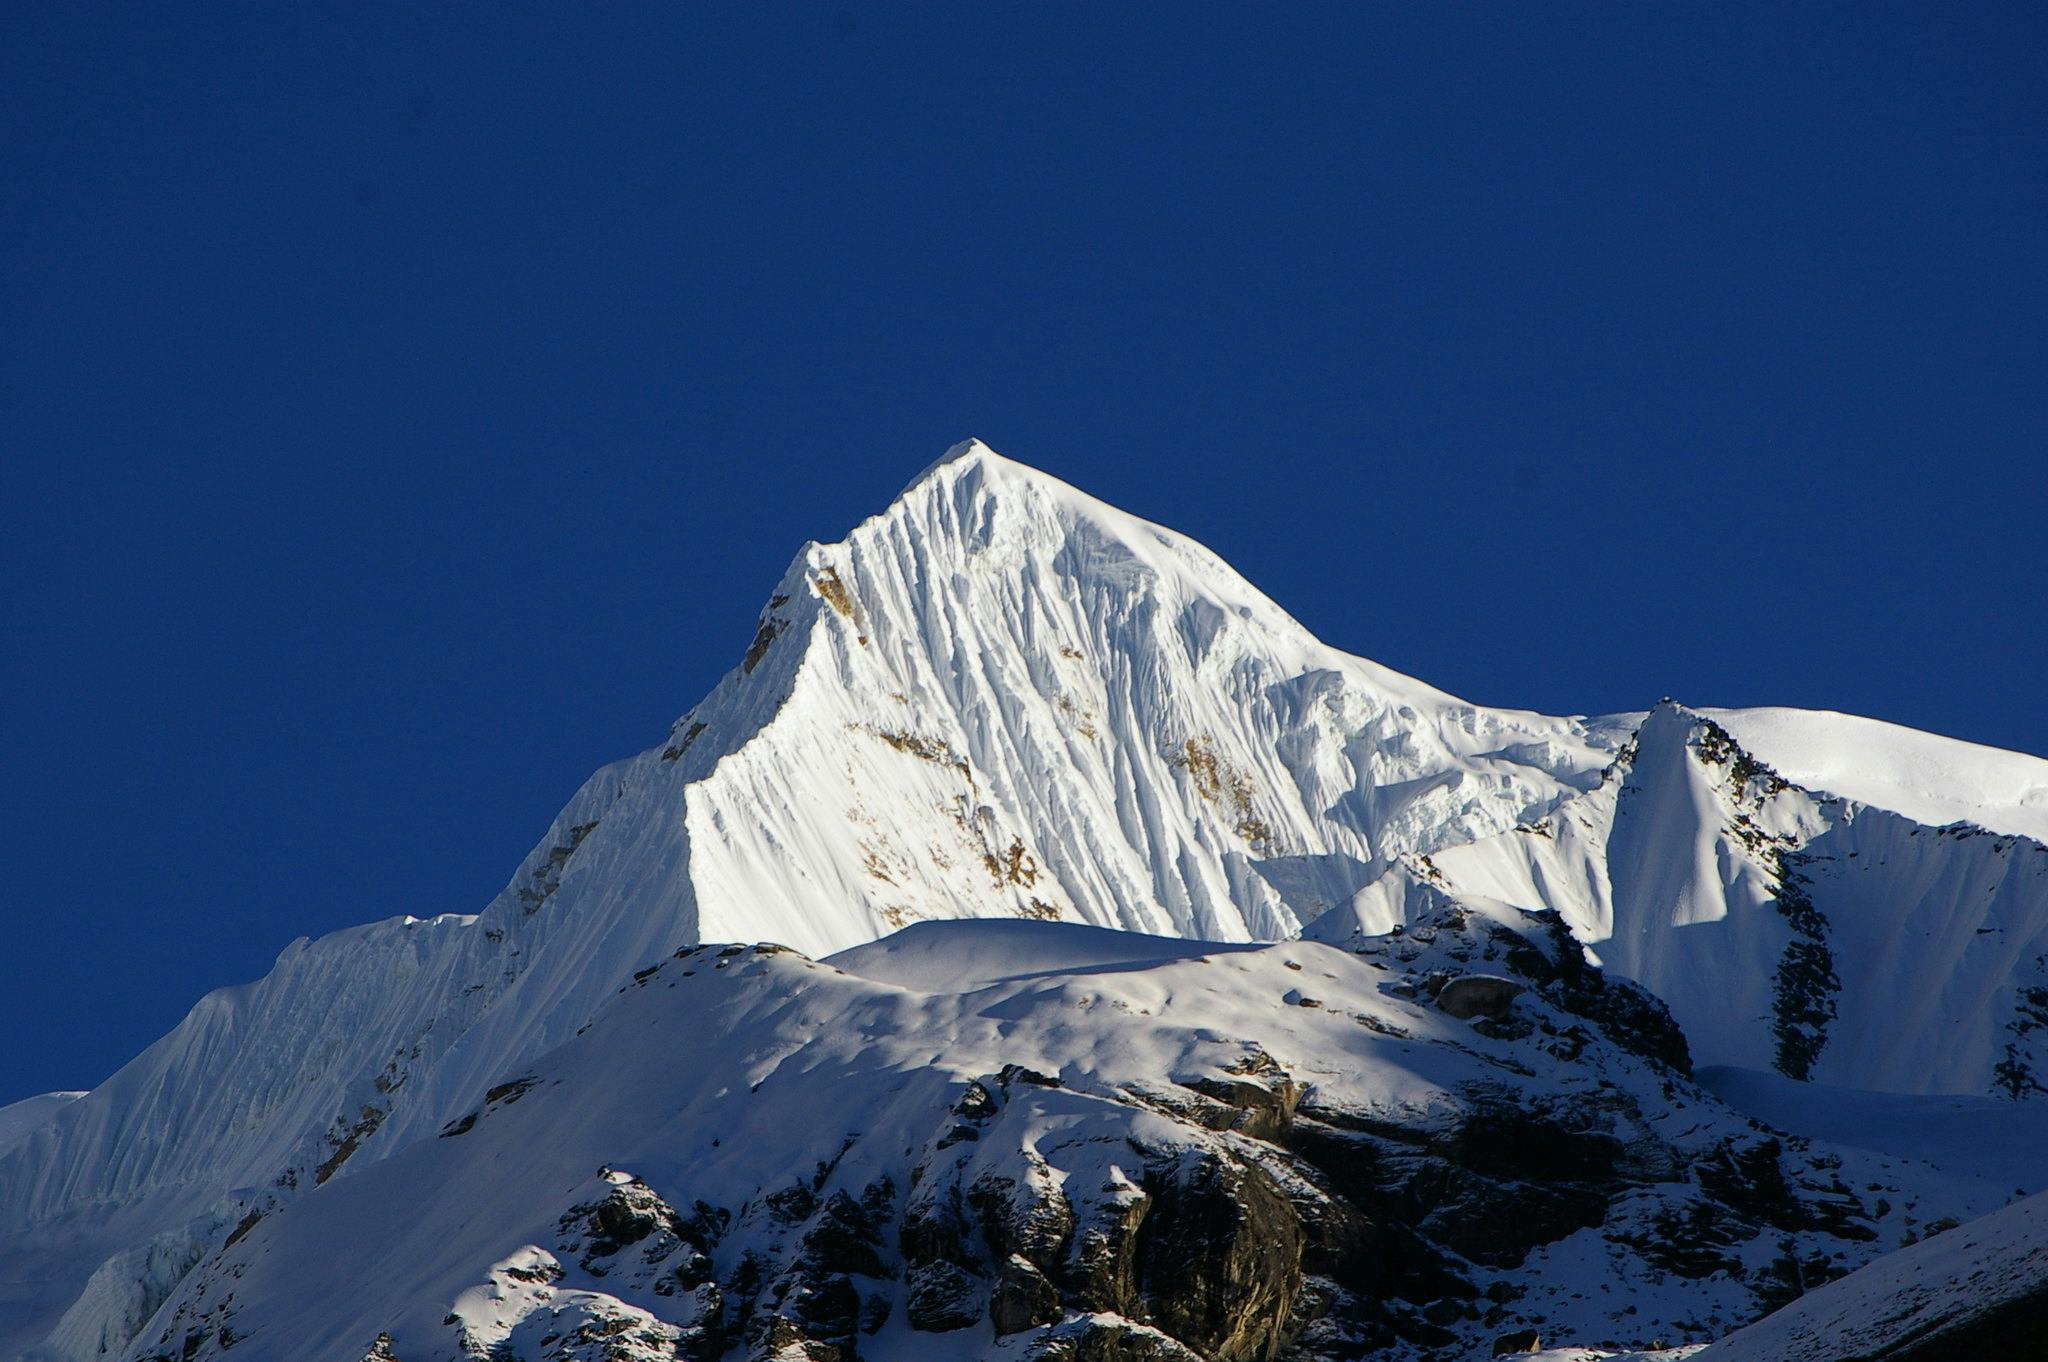 snowed covered Singu Chuli Peak